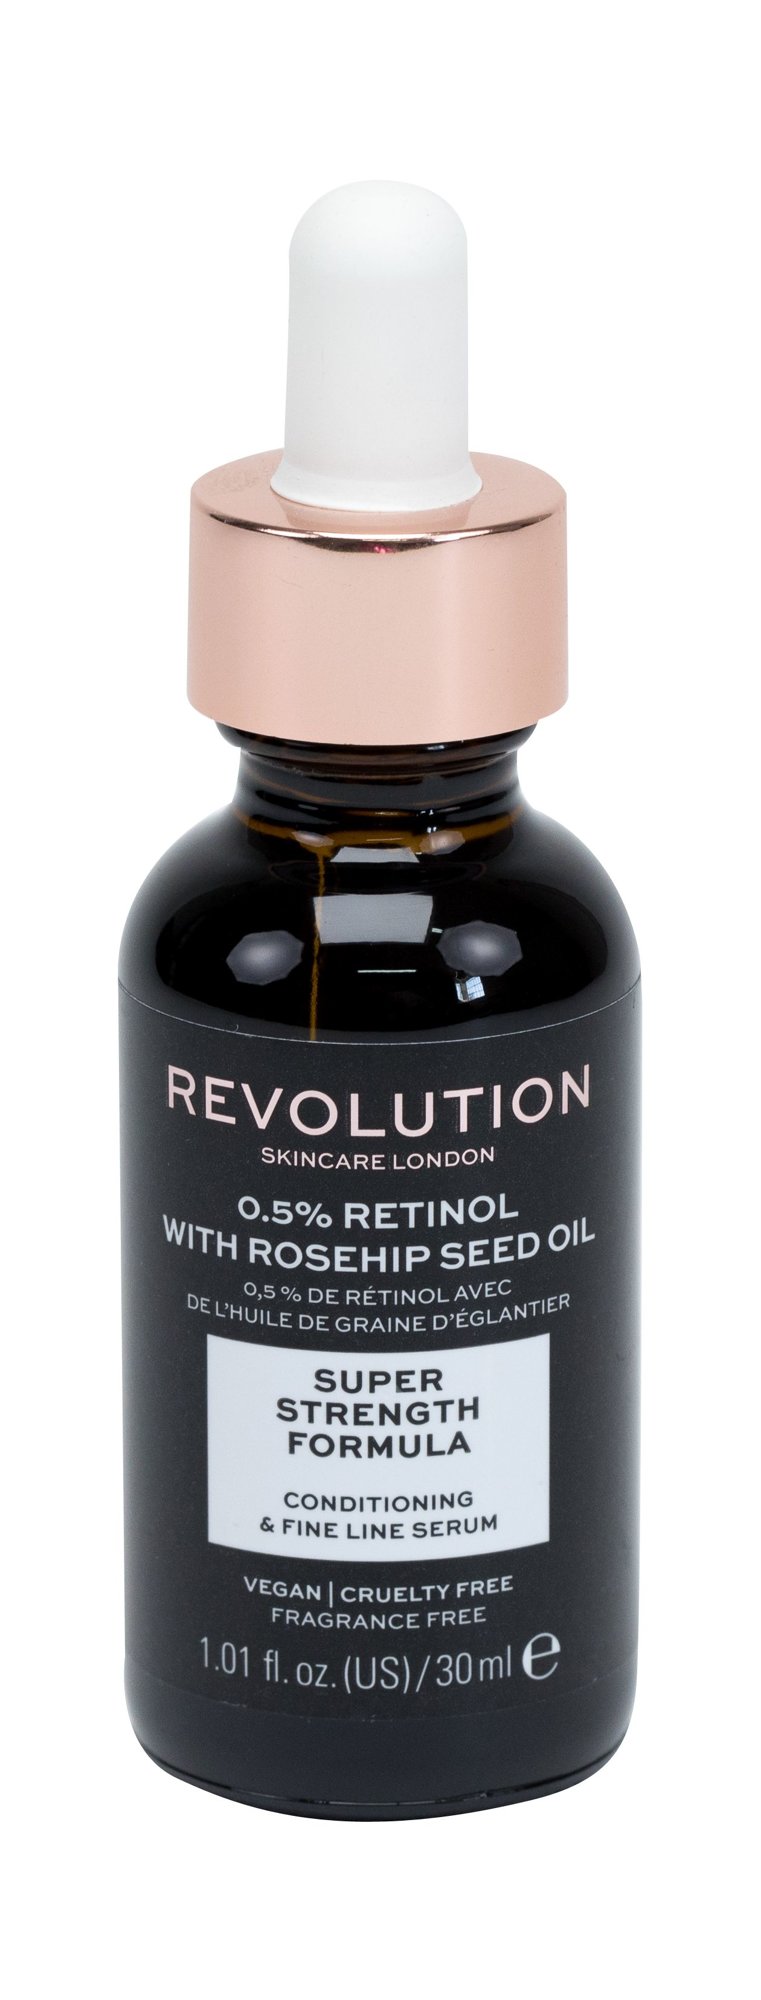 Makeup Revolution London Skincare 0,5% Retinol with Rosehip Seed Oil 30ml Veido serumas